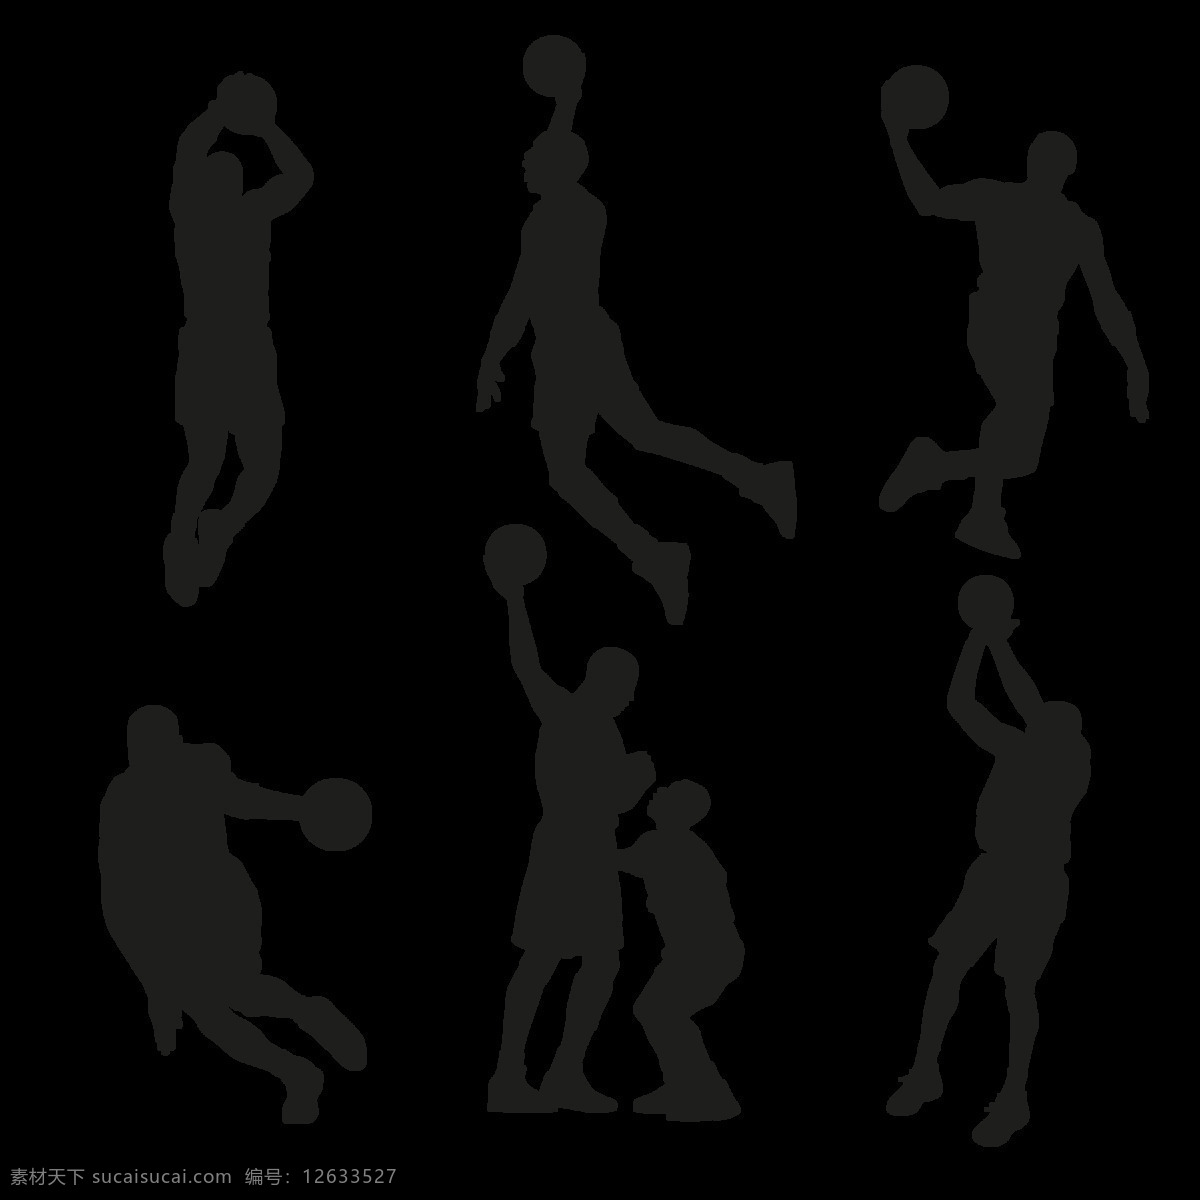 手绘 投篮 动作 剪影 免 抠 透明 图 层 打蓝球 蓝球运动 nba cba 篮球比赛 篮球手绘元素 卡通篮球 篮球海报 篮球运动员 投篮剪影 篮球素材 手绘篮球 篮球插图